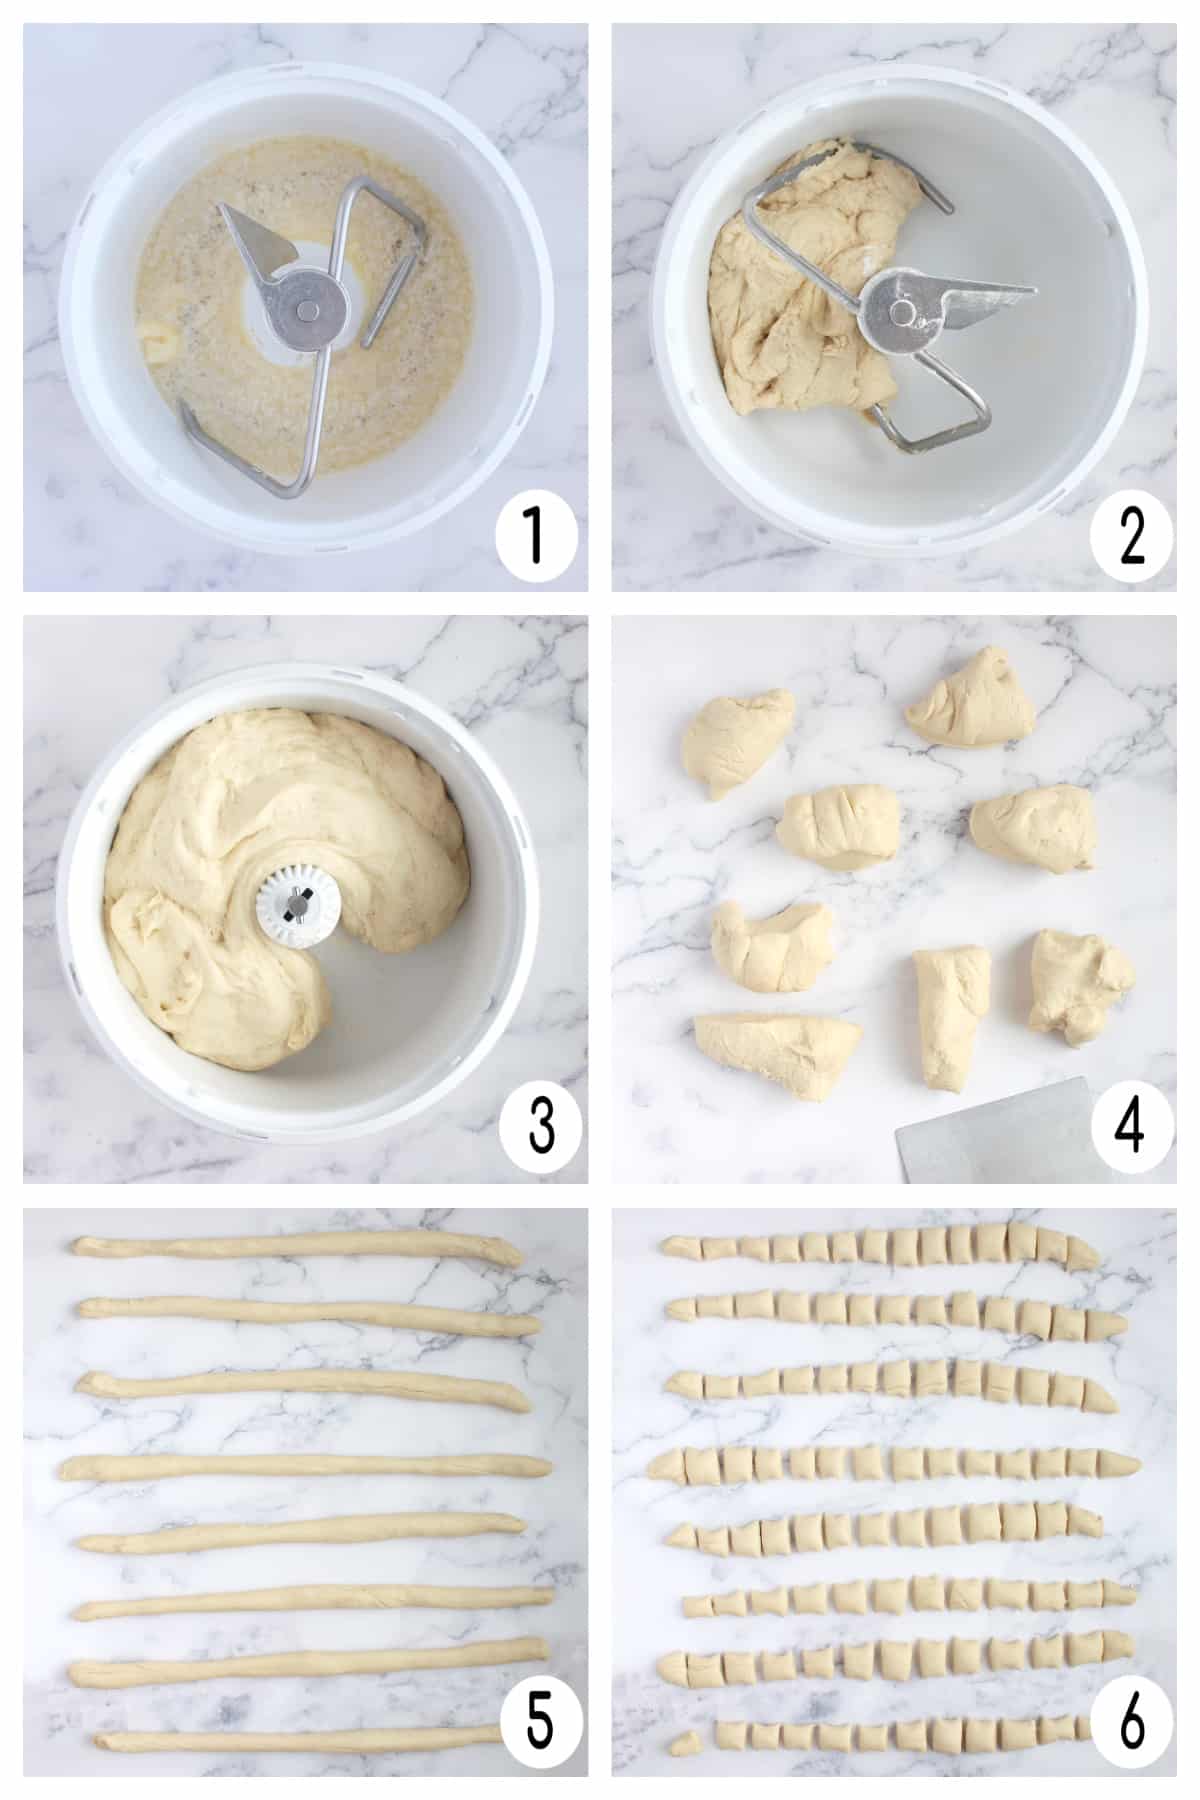 Process photos for how to make soft pretzel bites dough. 